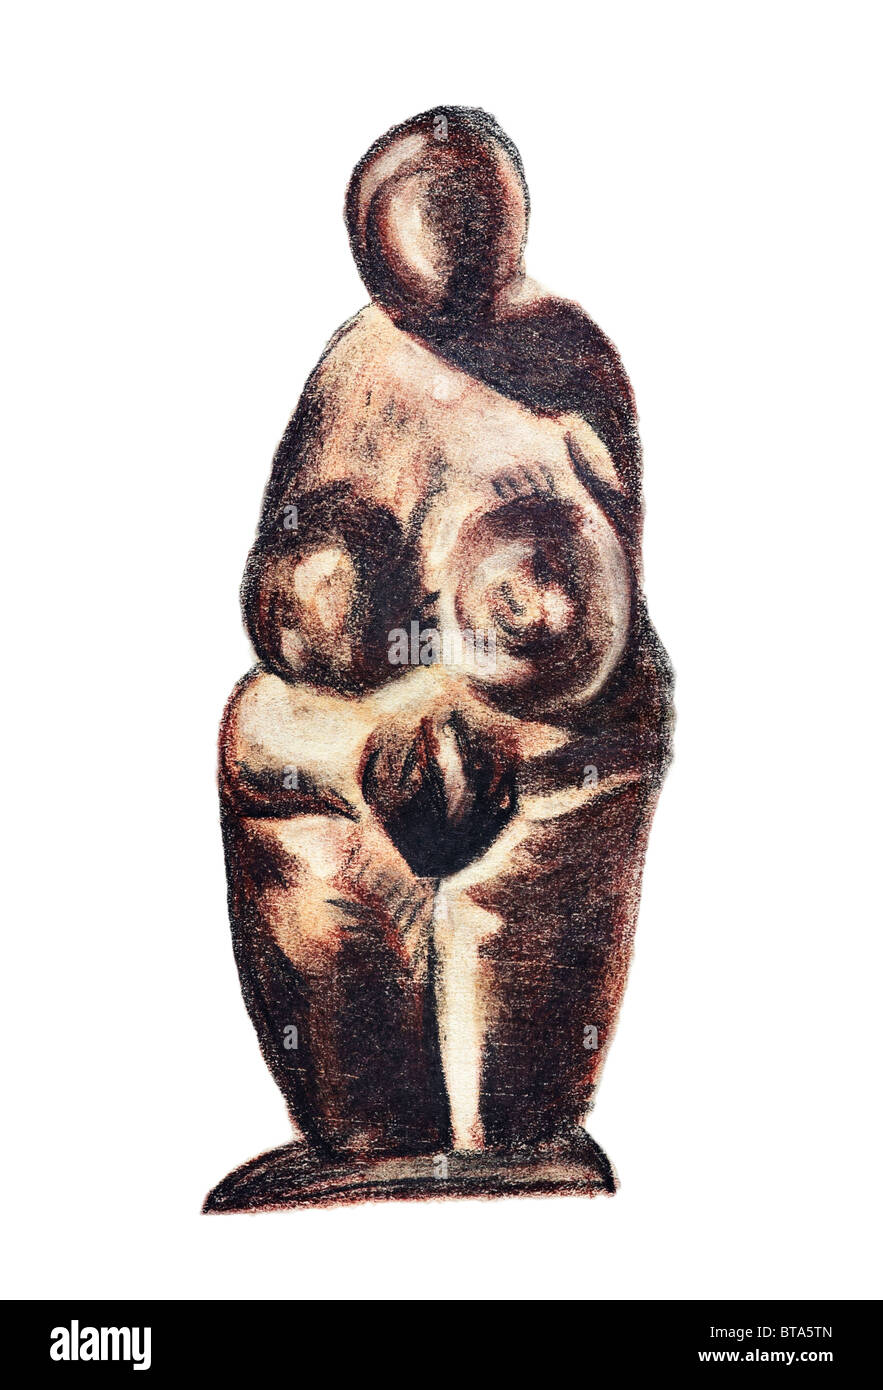 Vénus - femme figure dans le style préhistorique - symbole de fécondité Banque D'Images